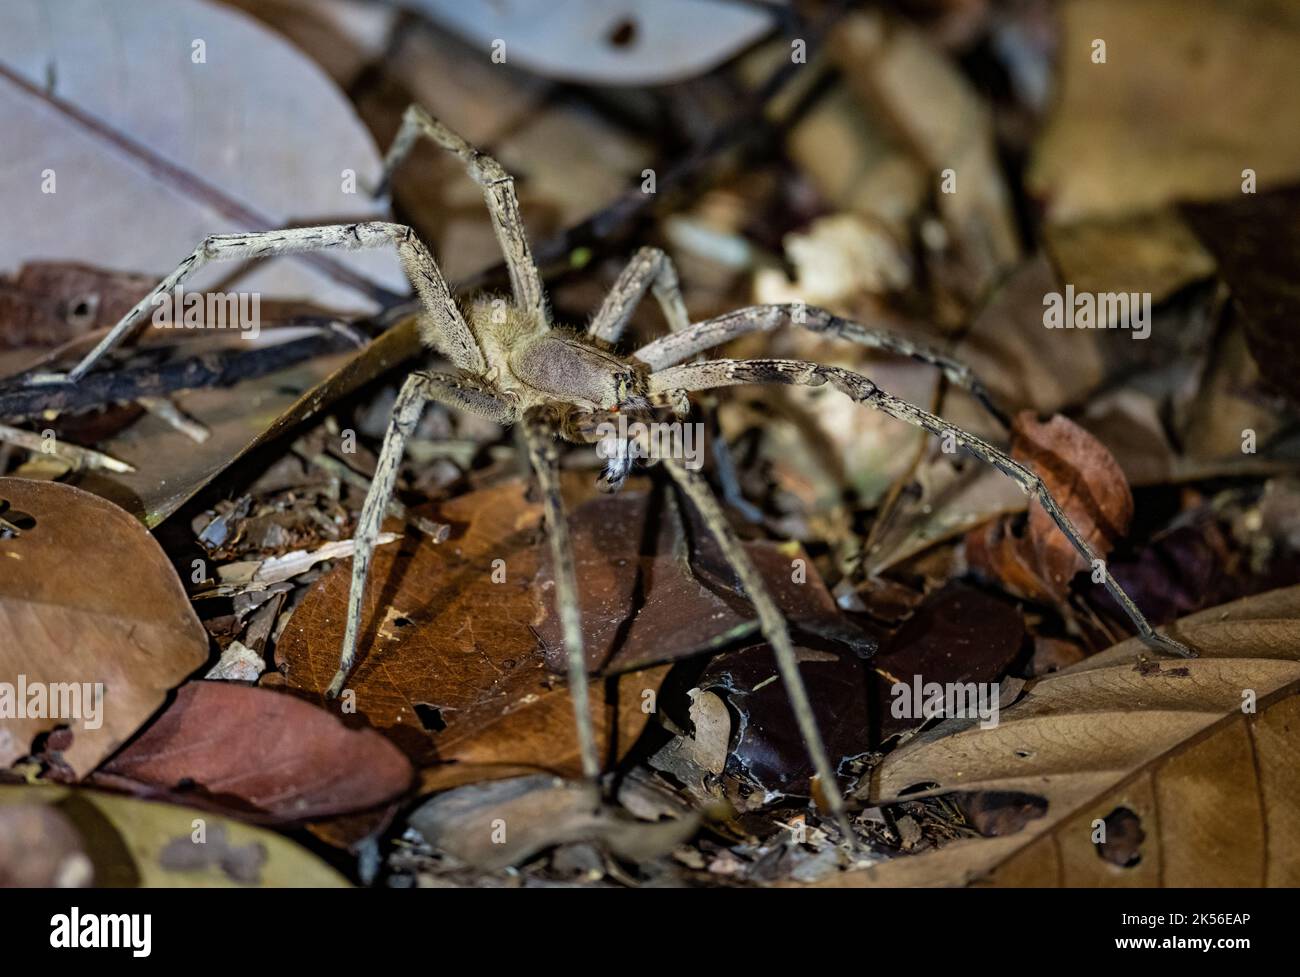 Una gran araña brasileña errante (Phoneutria sp.) en camadas de hojas de suelo forestal. Amazonas, Brasil. Foto de stock